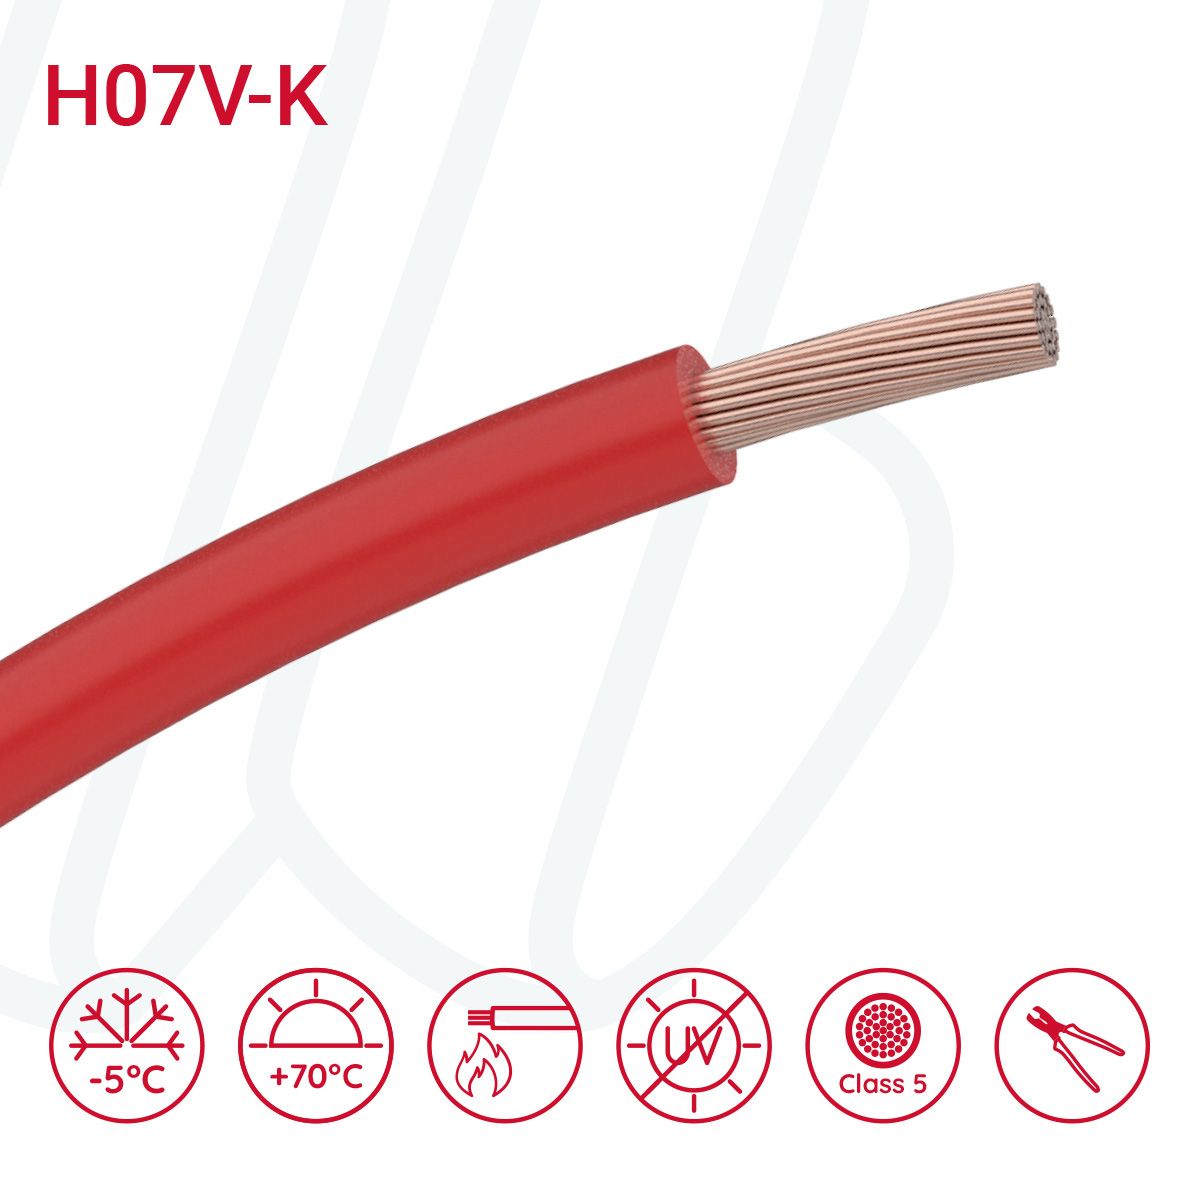 Провід монтажний гнучкий H07V-K 10 мм² червоний, 01, 10